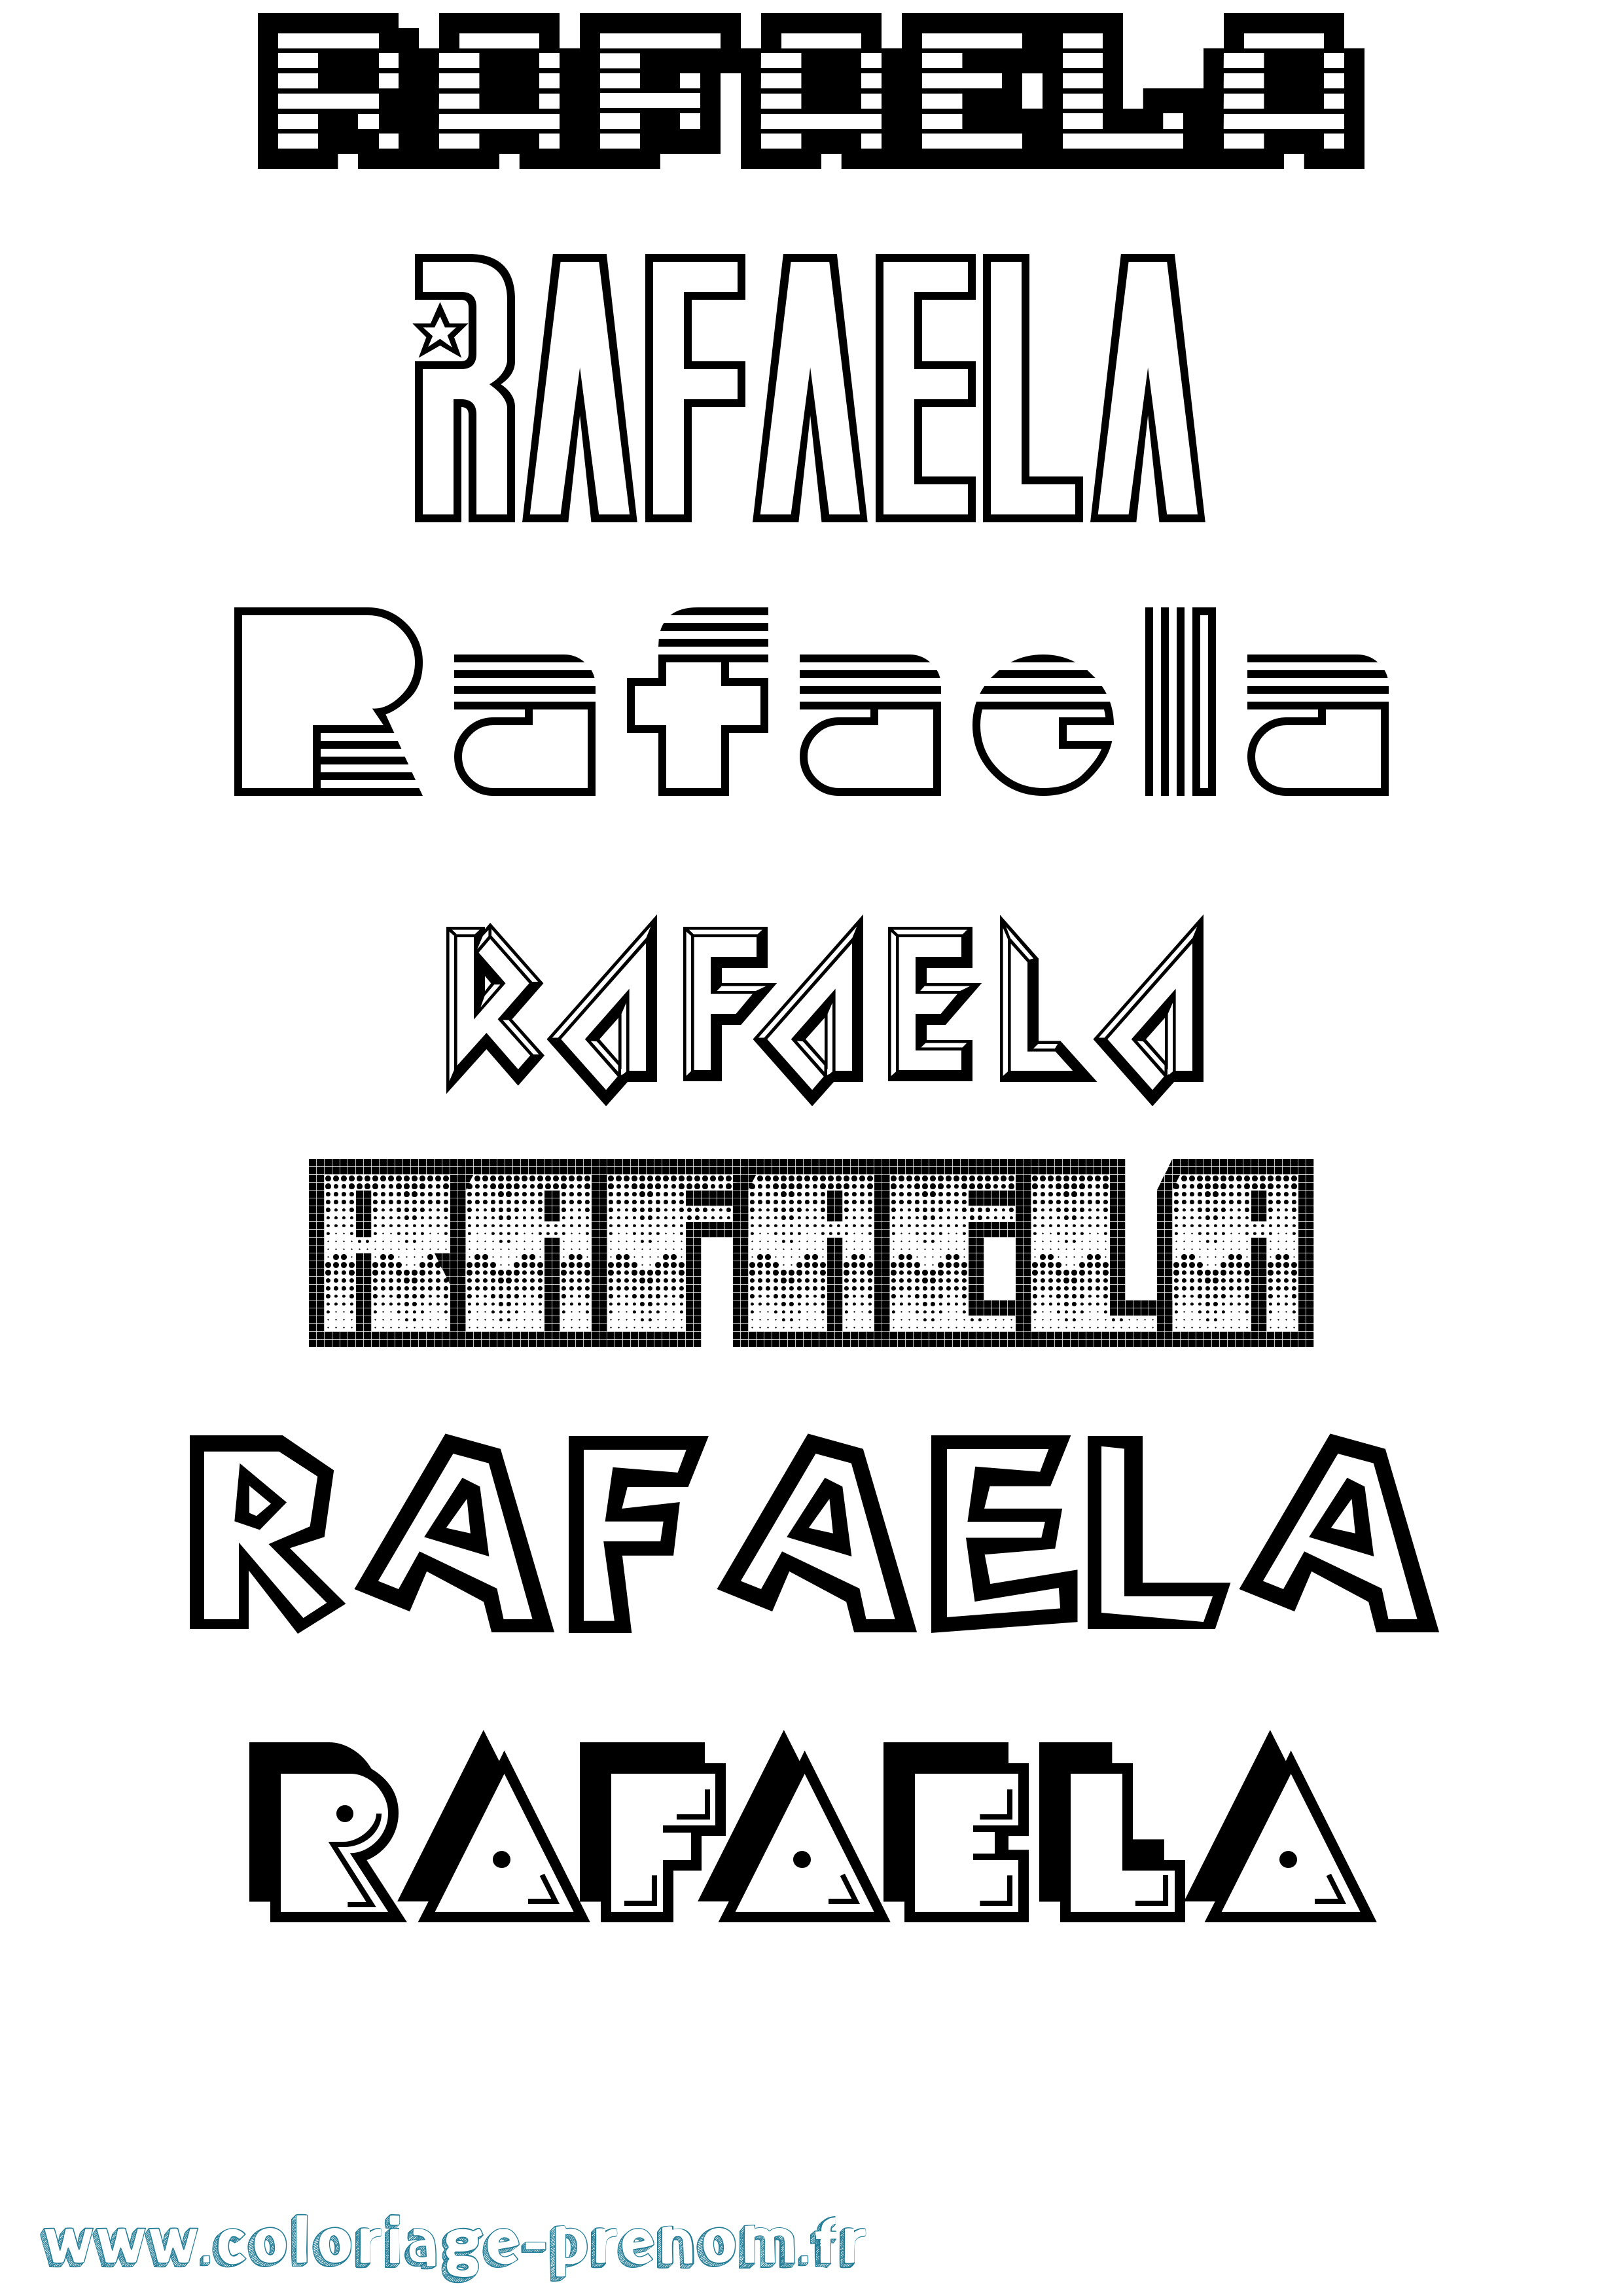 Coloriage prénom Rafaela Jeux Vidéos